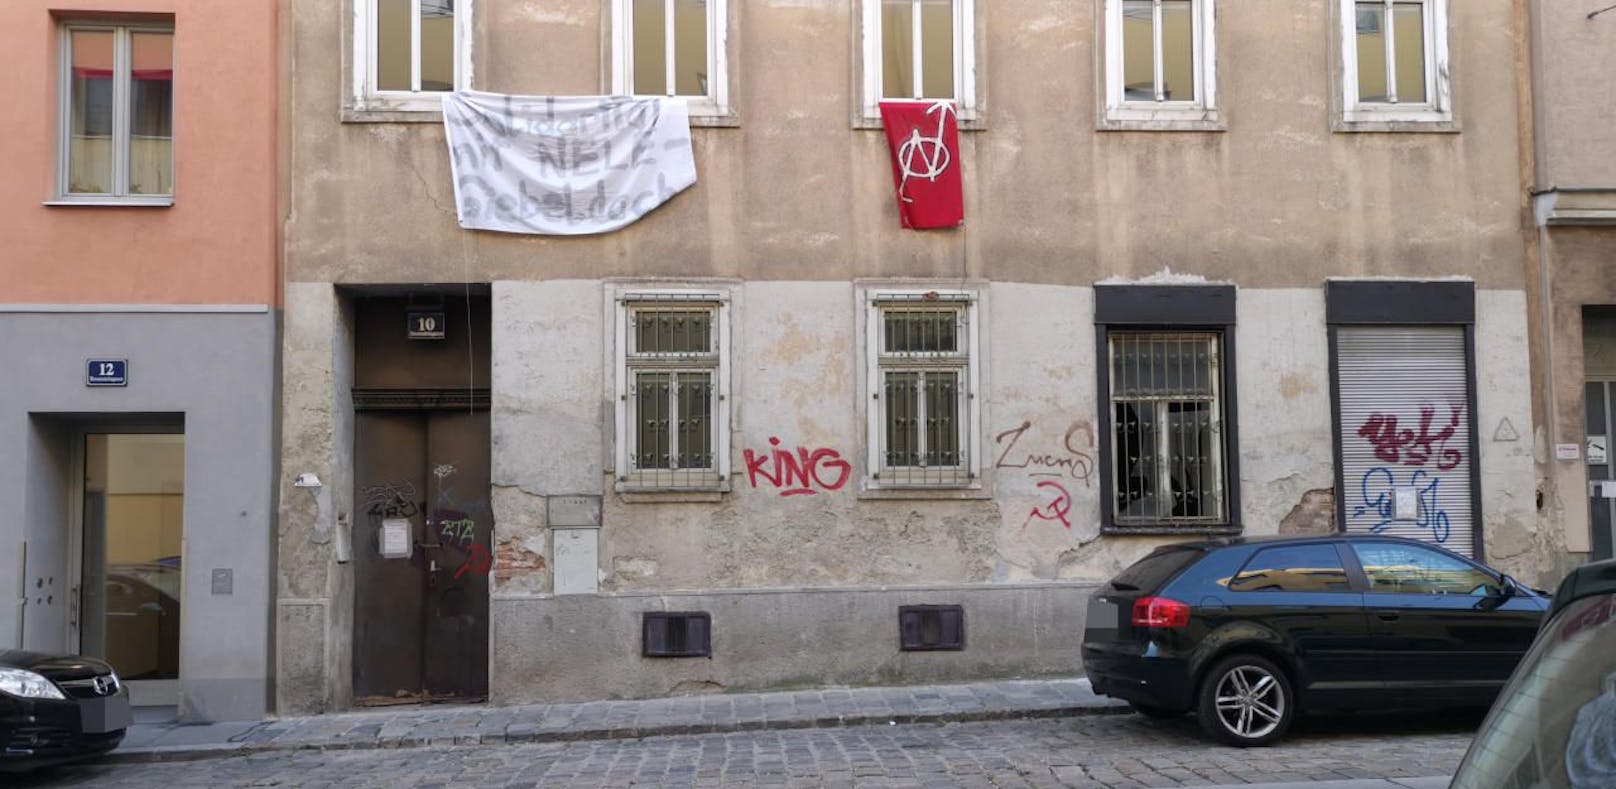 Am Donnerstagnachmittag verließen die Aktivisten das Haus in der Rosensteingasse 10. 